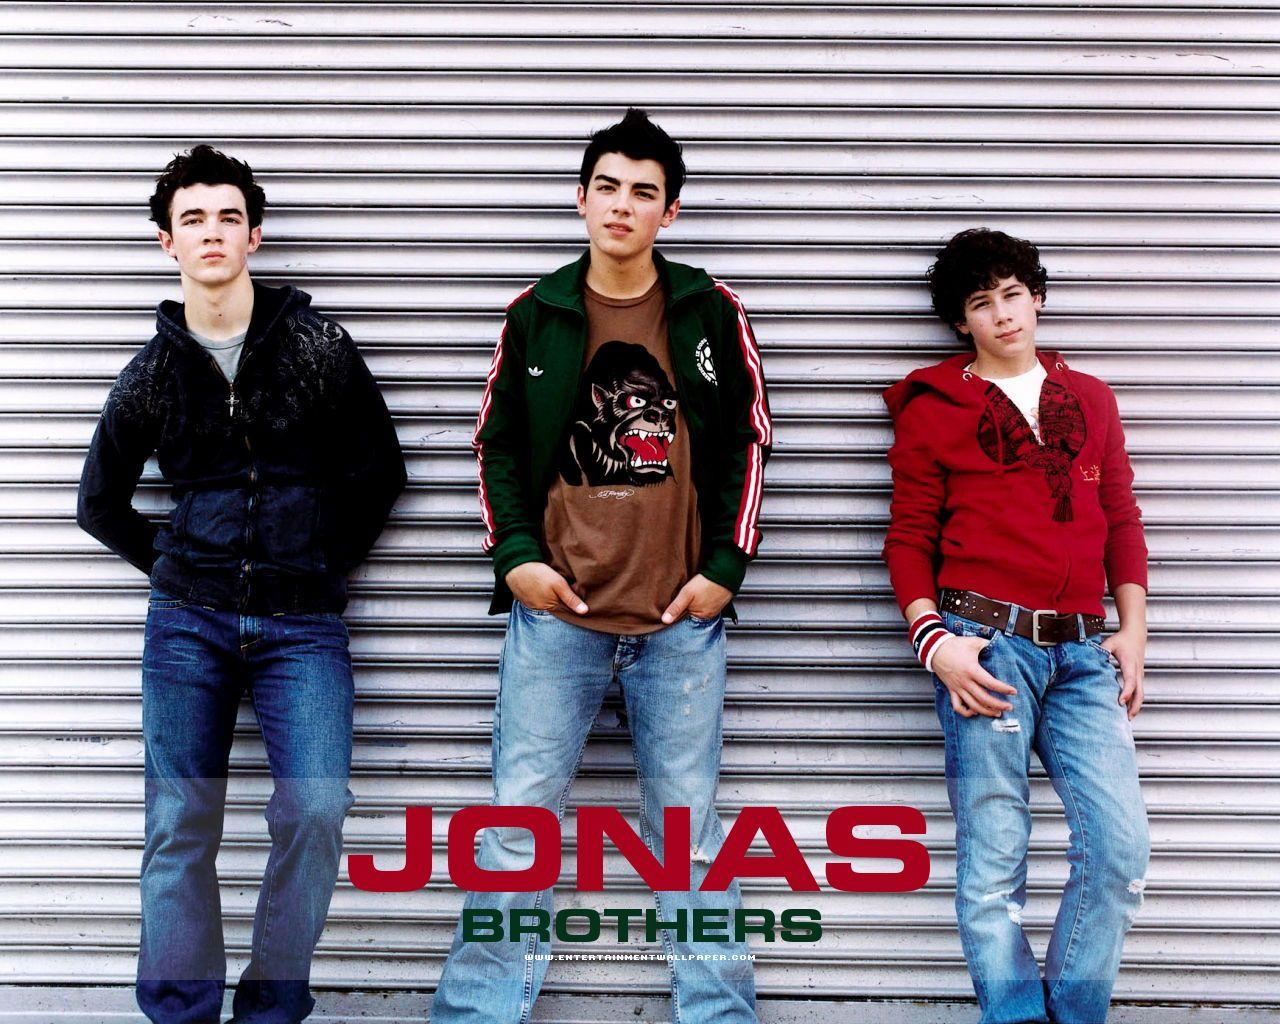 Jonas Brothers Wallpaper - (1280x1024). Desktop